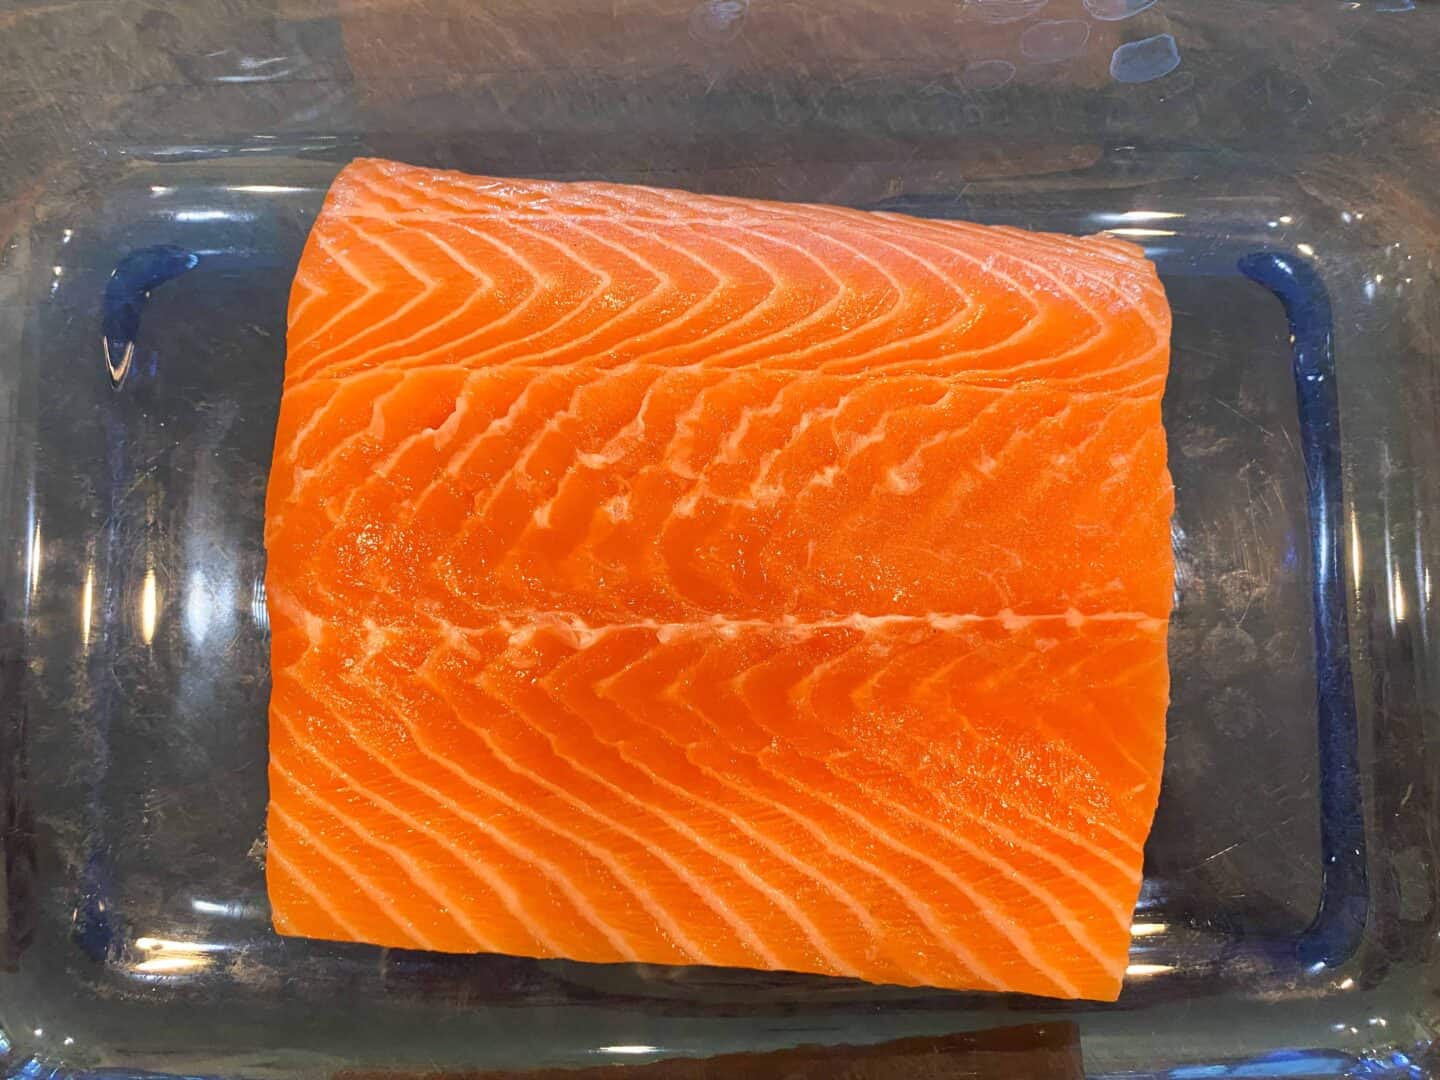 salmon filet